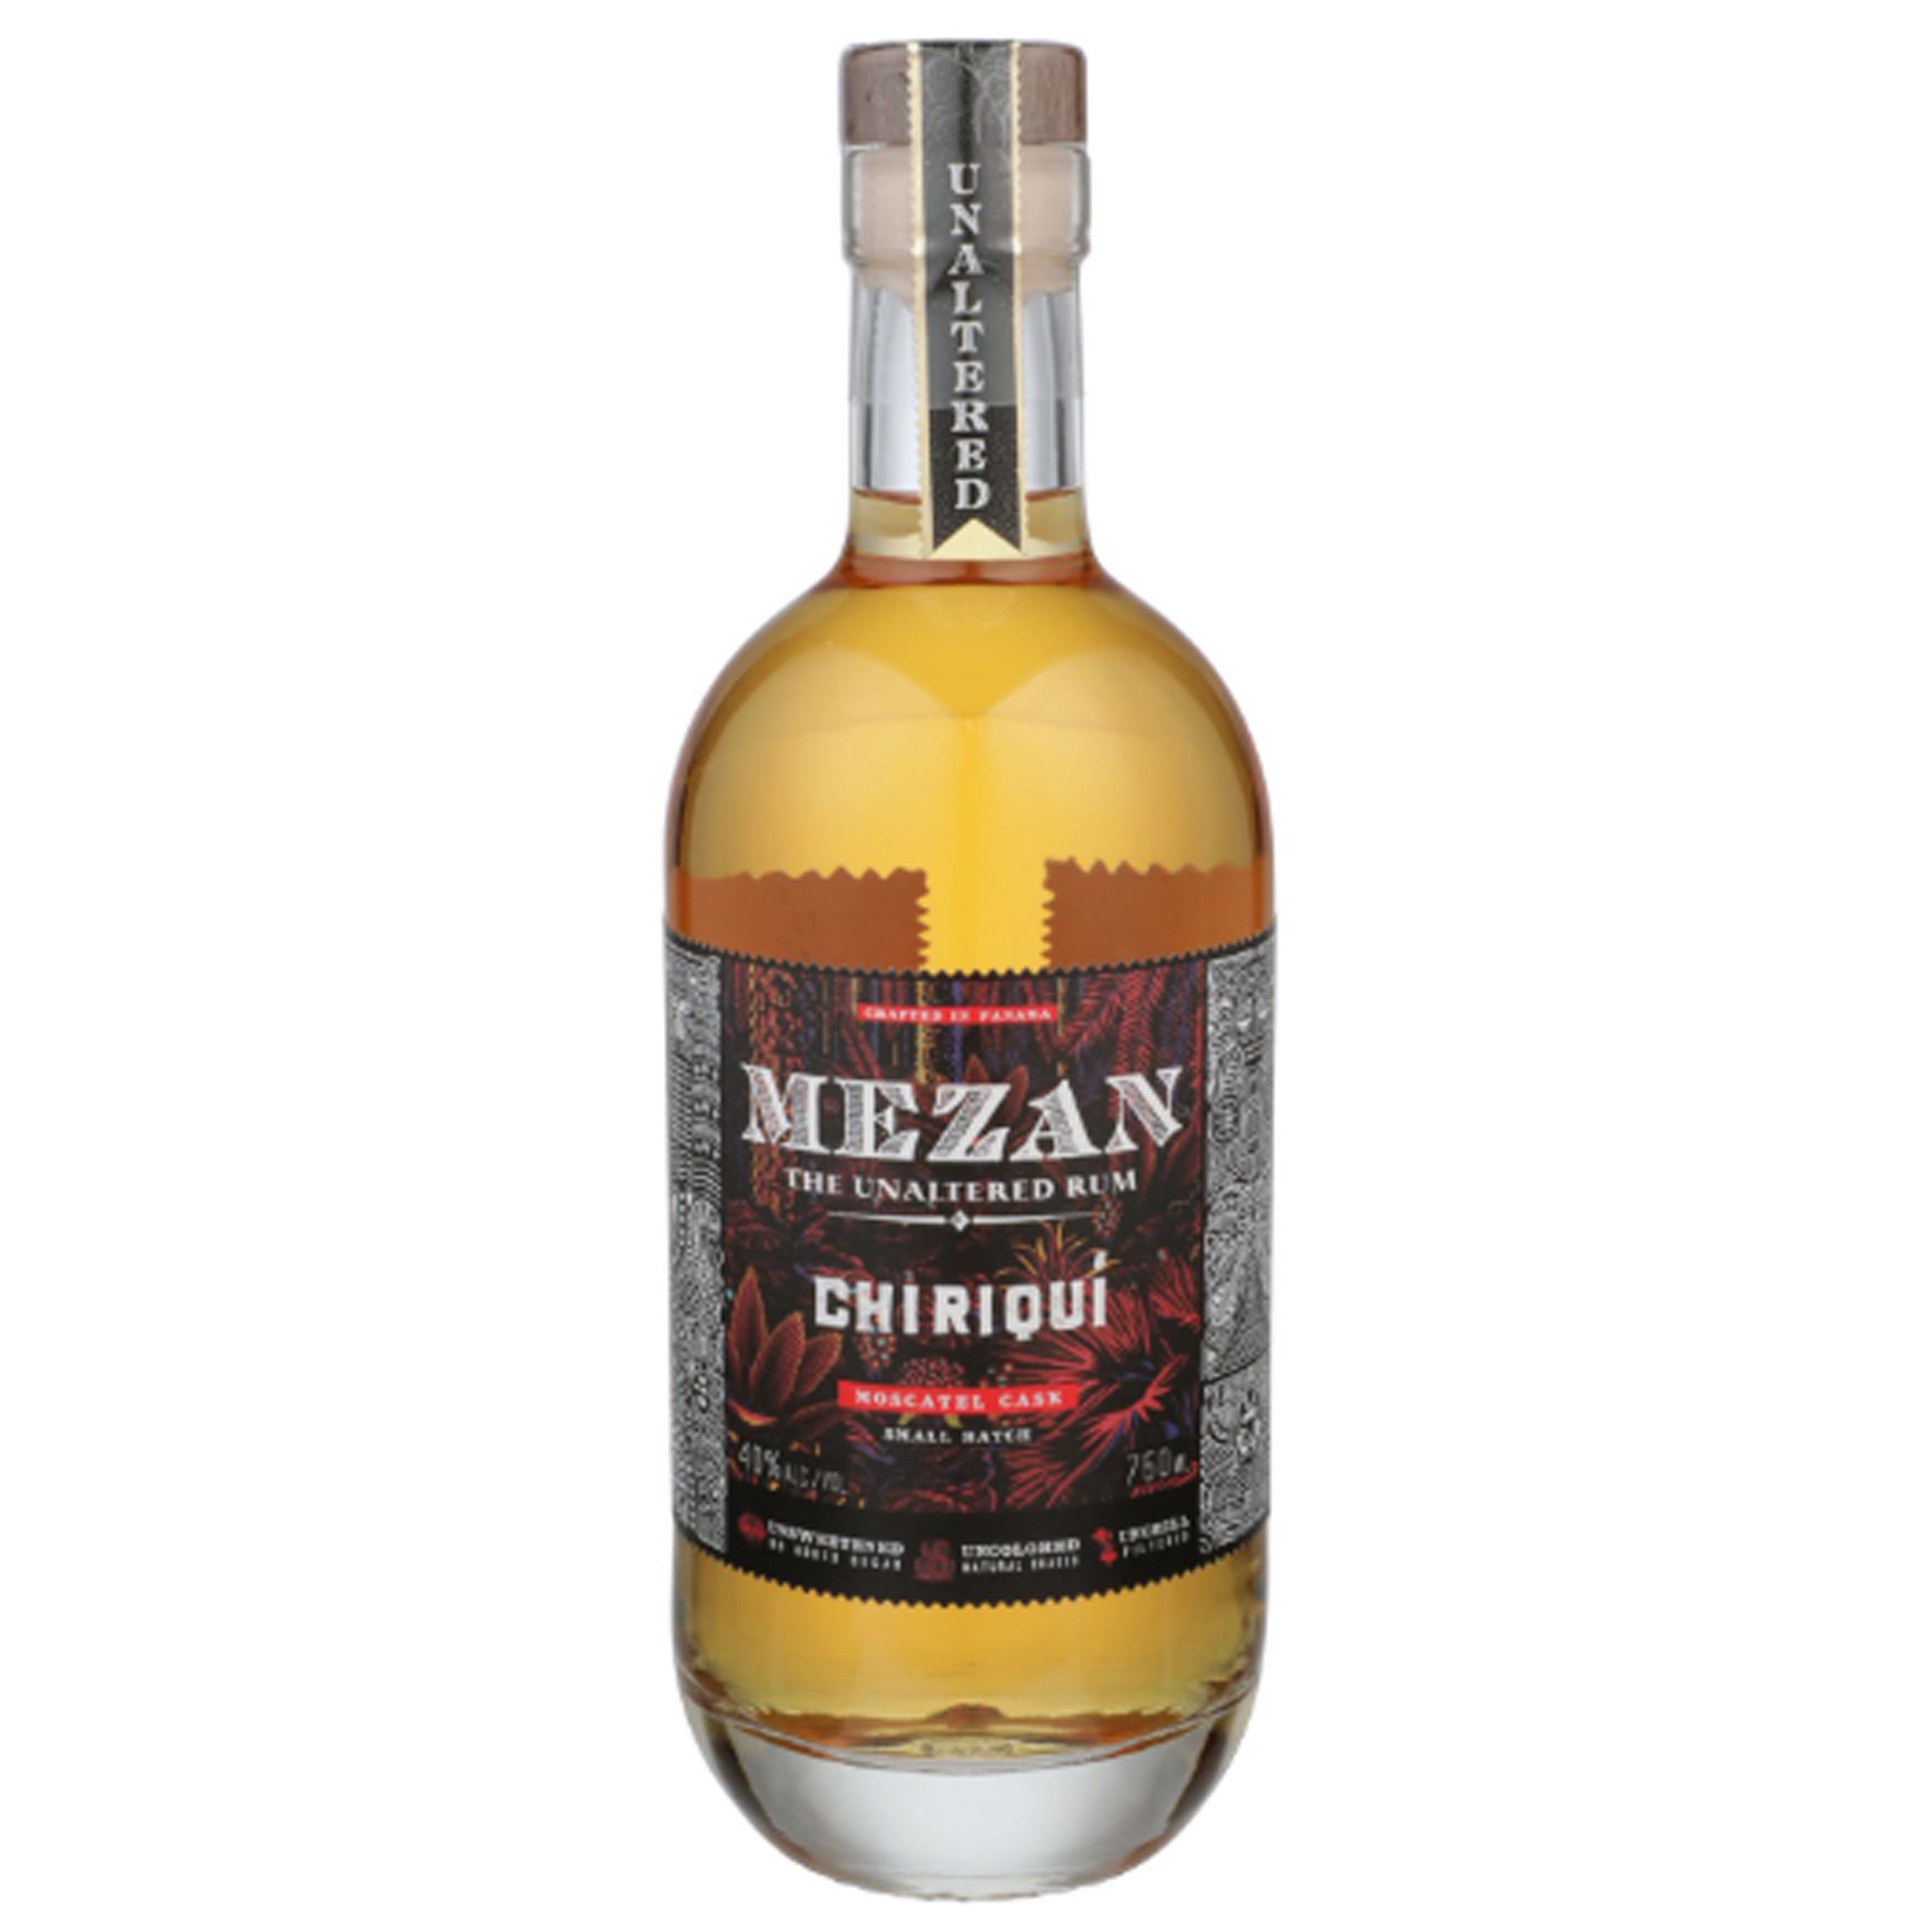 Mezan Chiriquí Moscatel Cask Rum – Chips Liquor